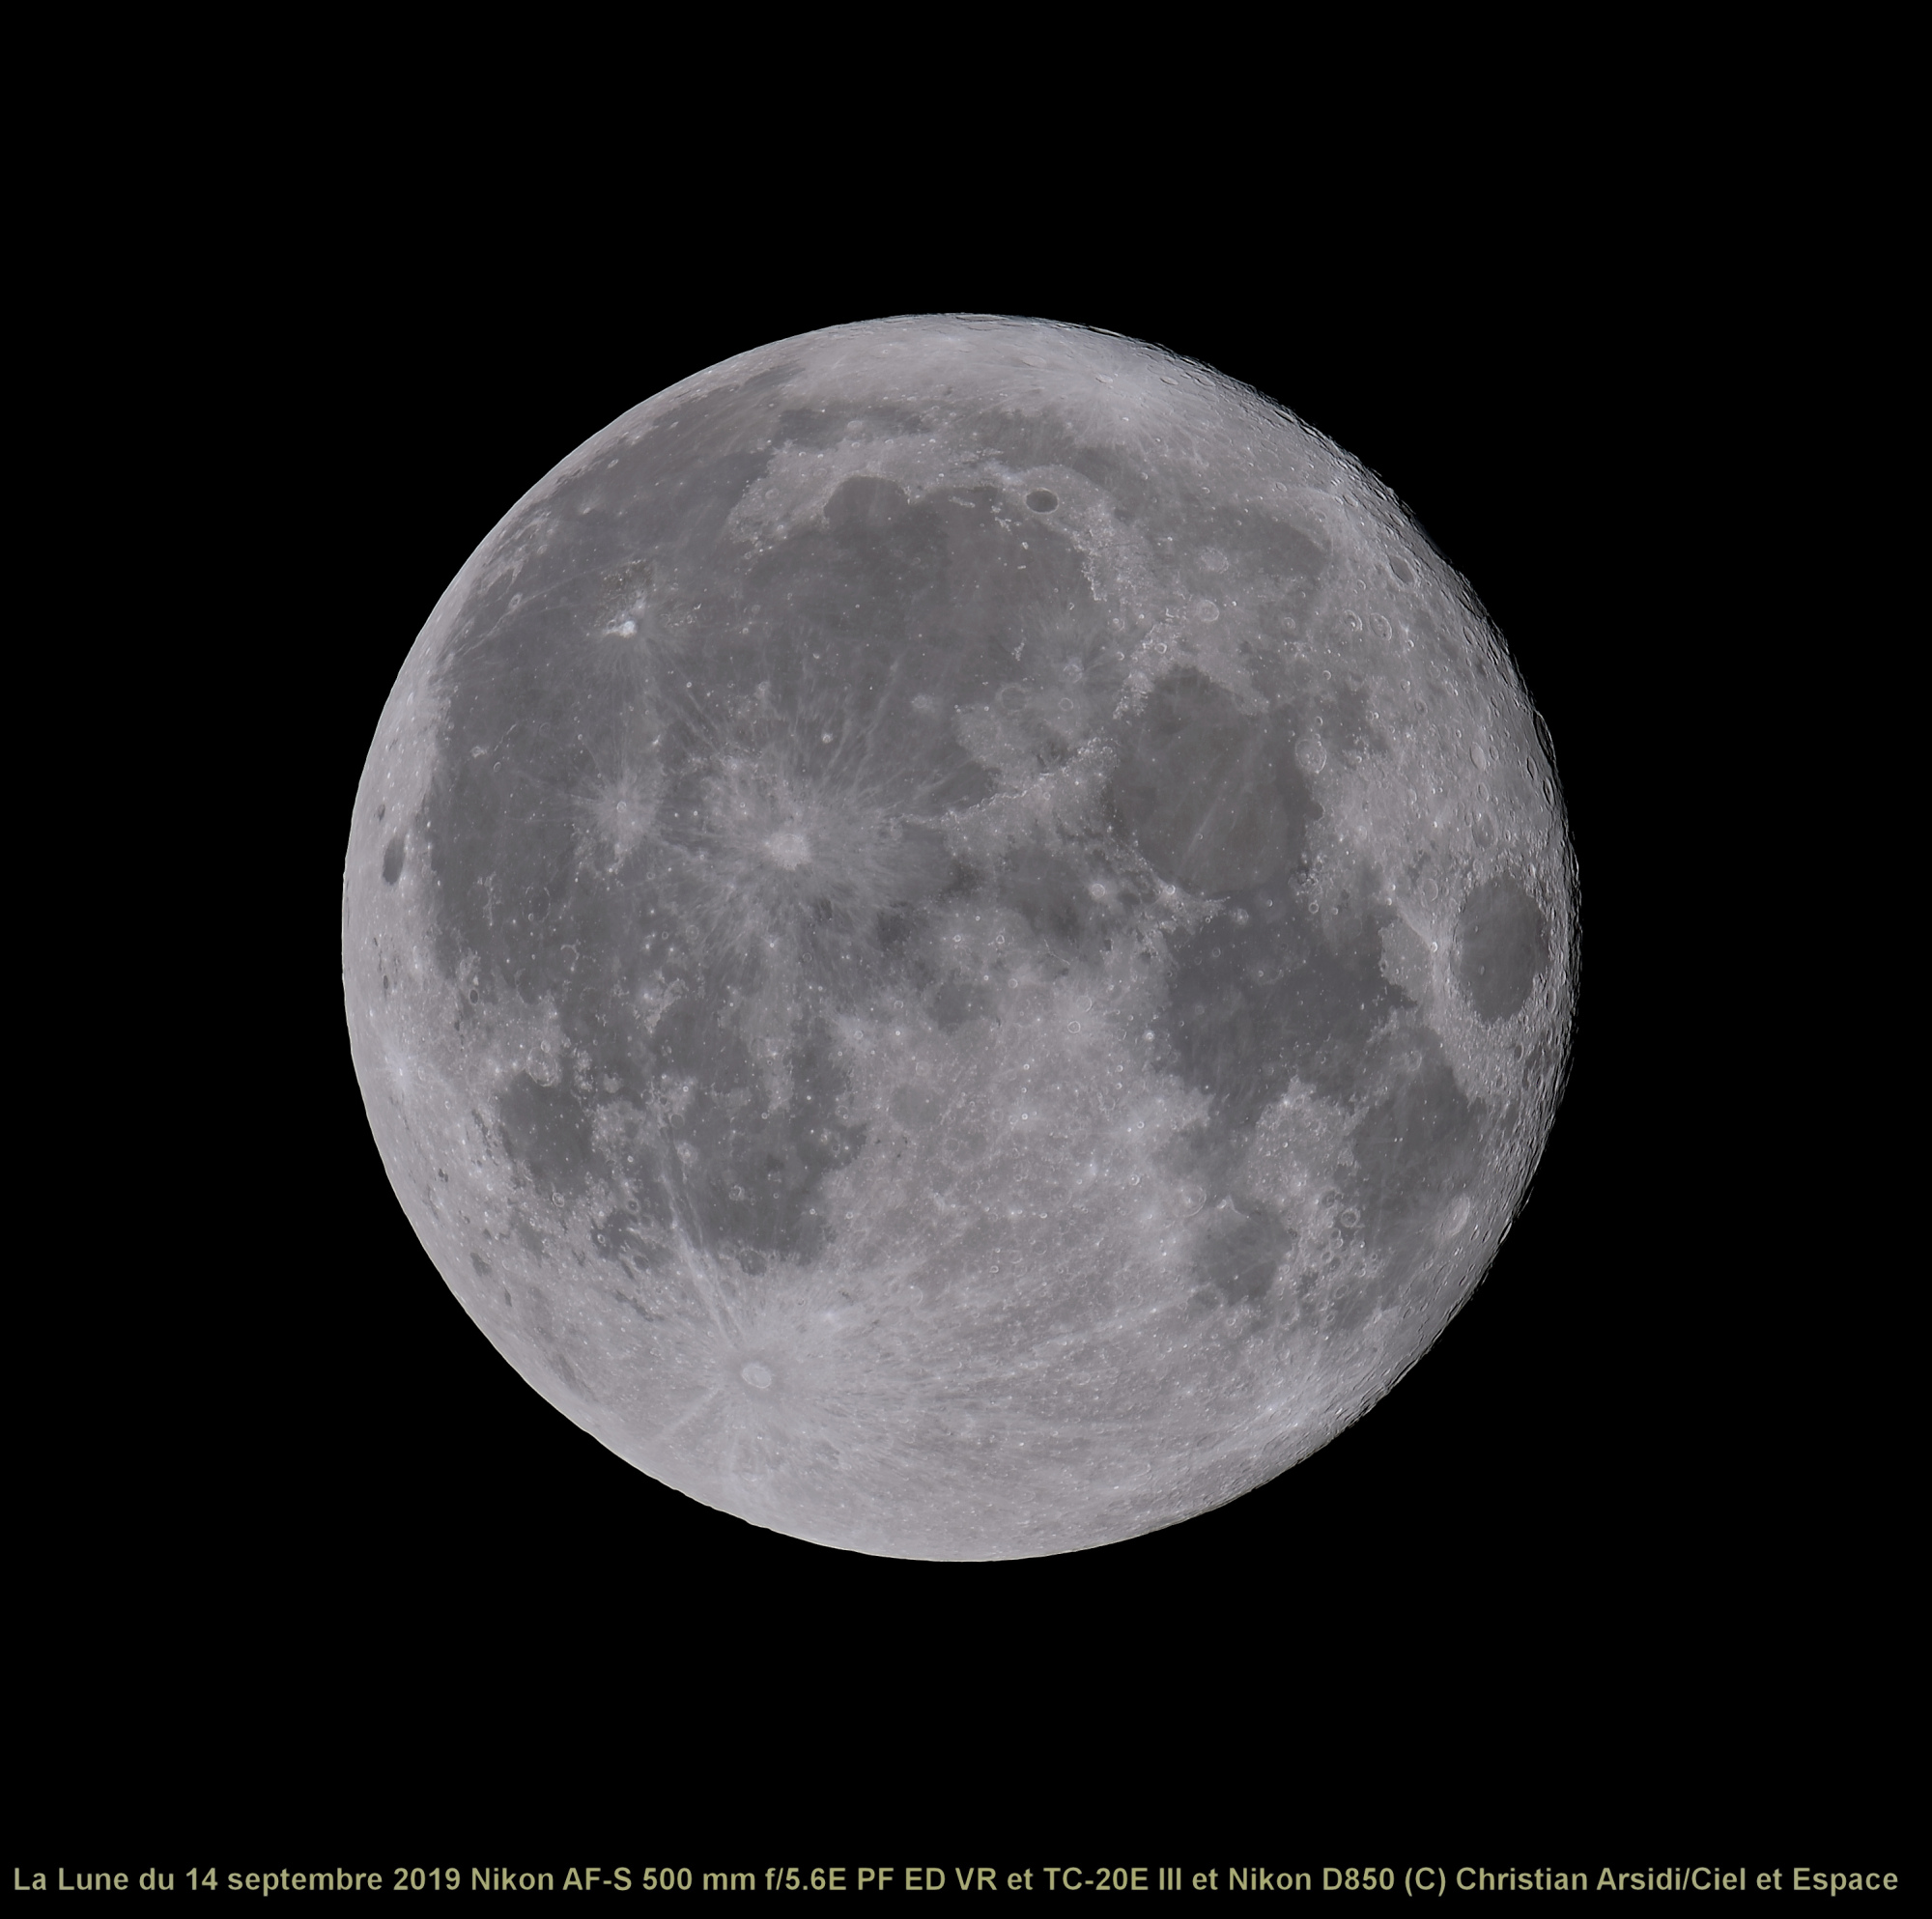 La Lune 25 images traitée_DxO-2 1 BV3 JPEG.jpg